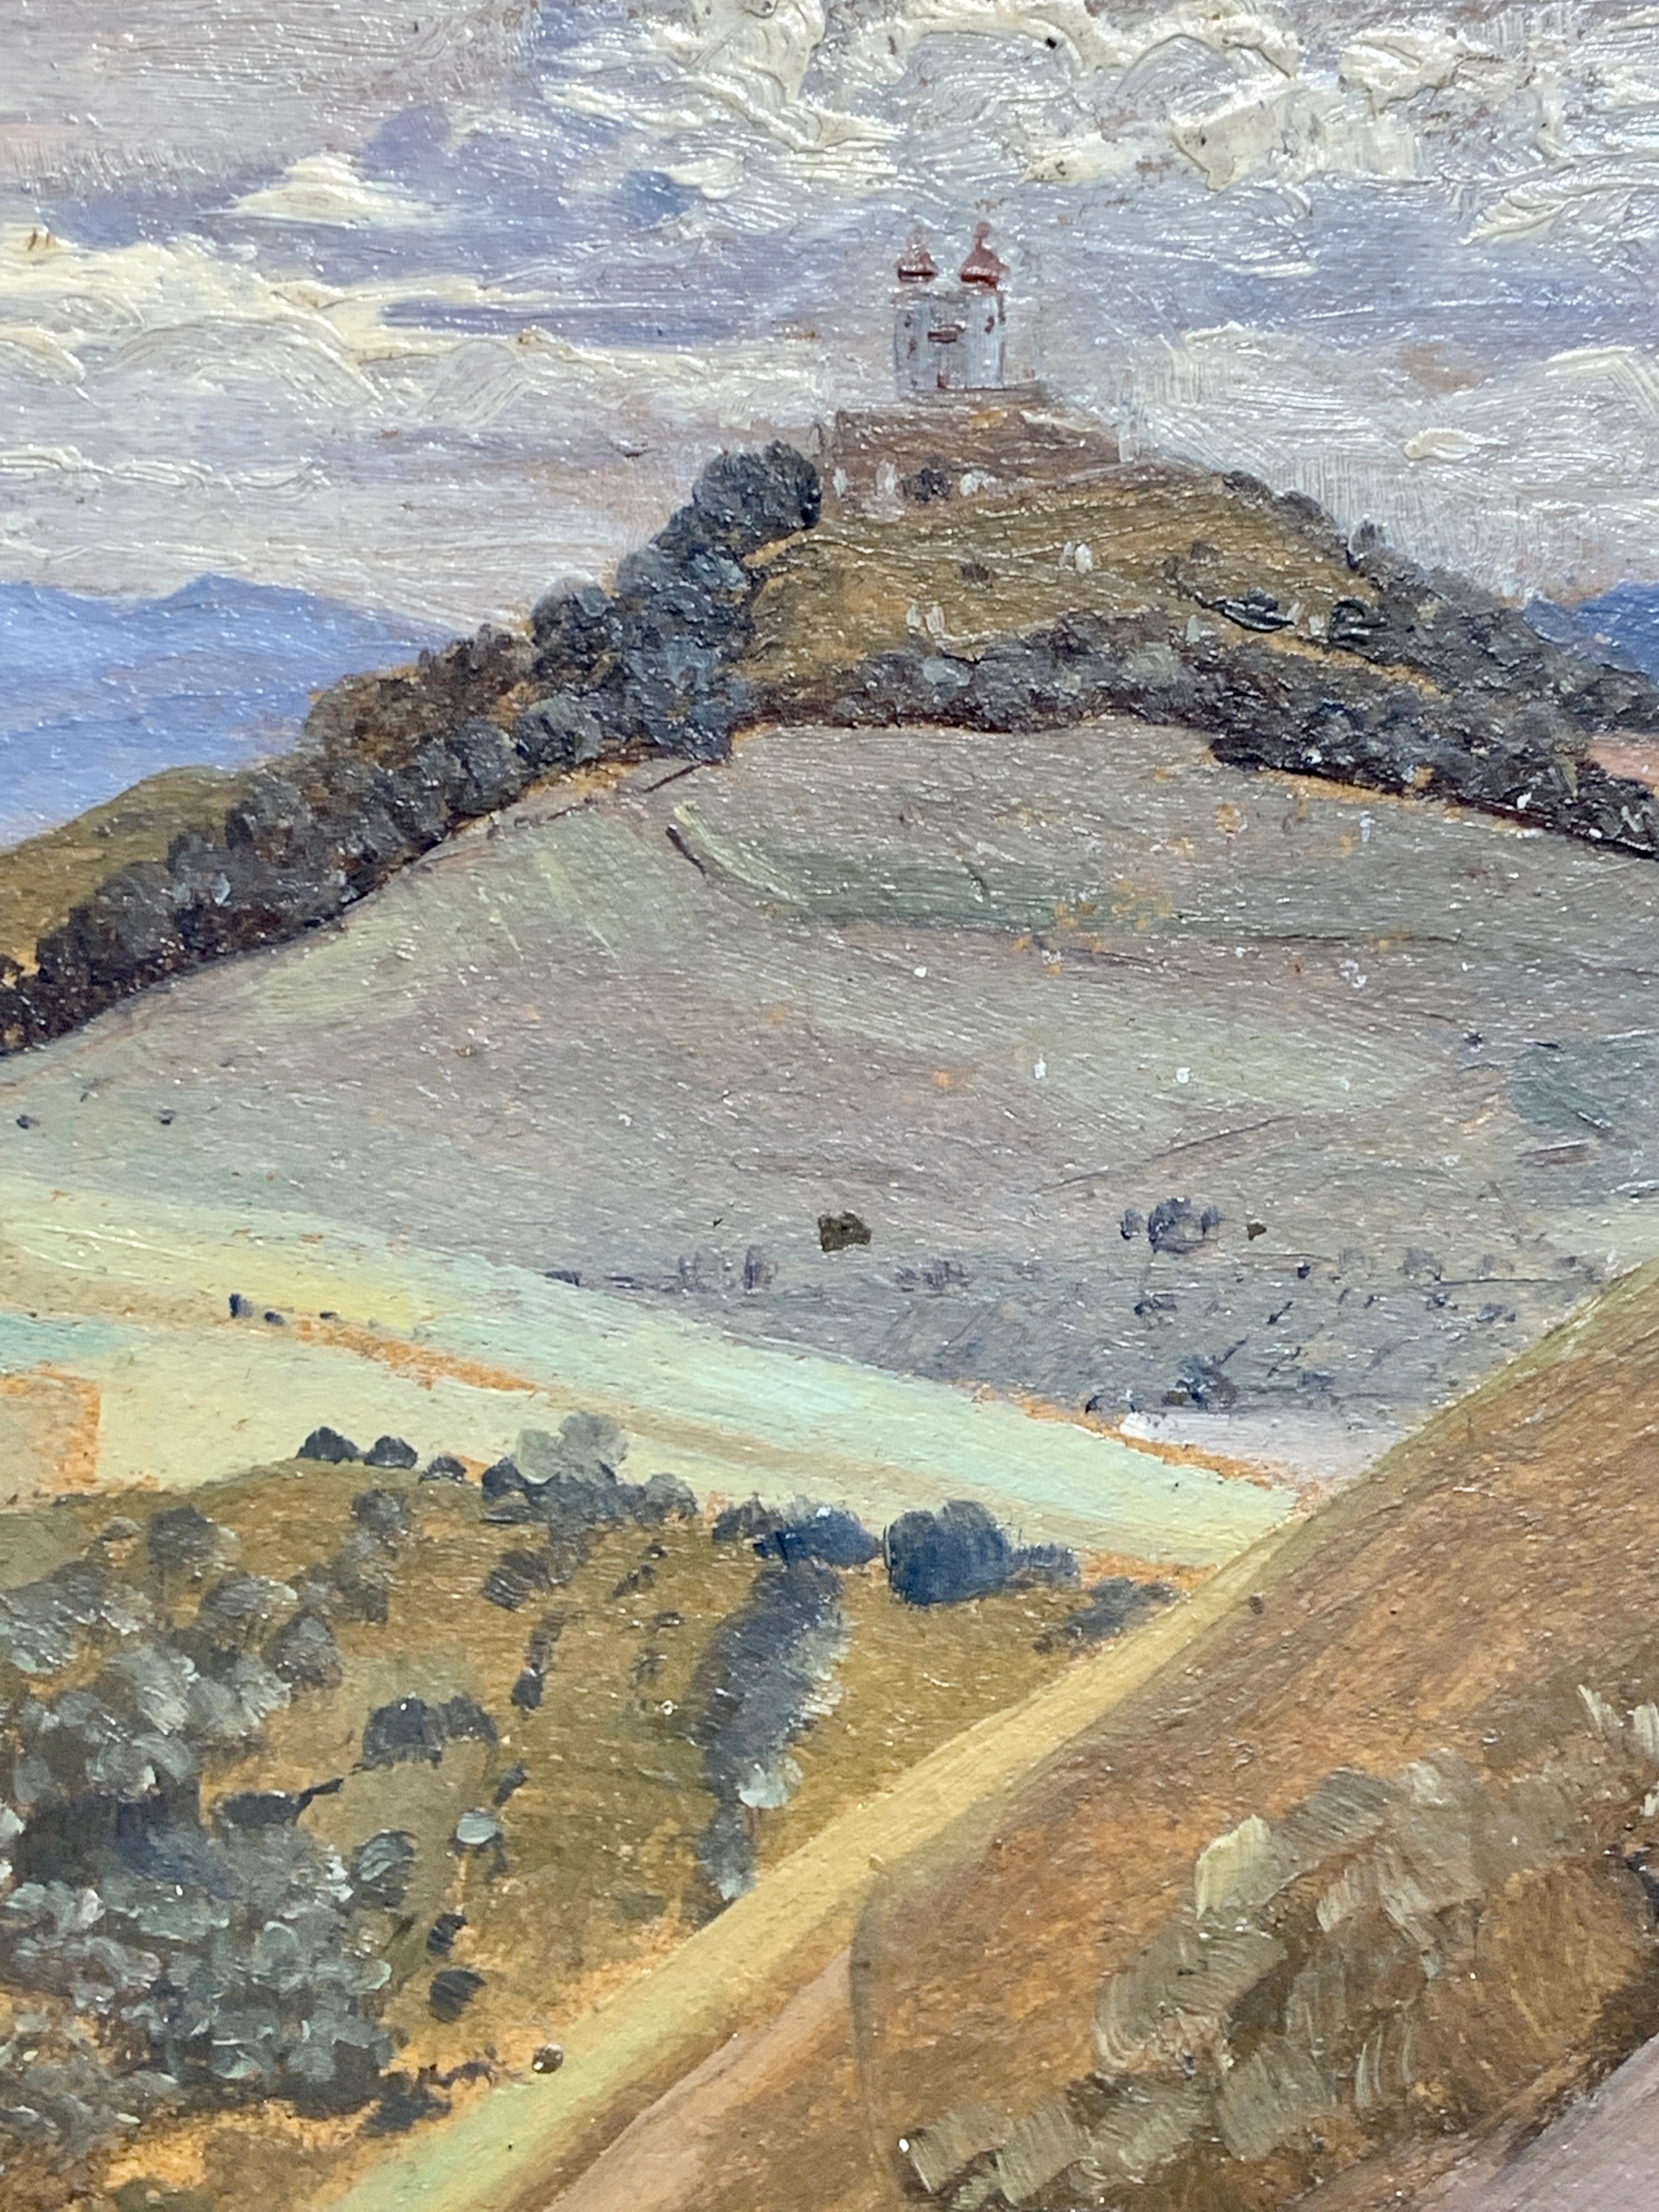 Magnifique paysage autrichien avec une église sur une montagne.

Hermann Reisz Autrichien (1865-1920)Reisz était un peintre autrichien du 19ème siècle très apprécié pour ses paysages, ses genres et ses animaux. Il a étudié à la Kunstgewerbeschule de